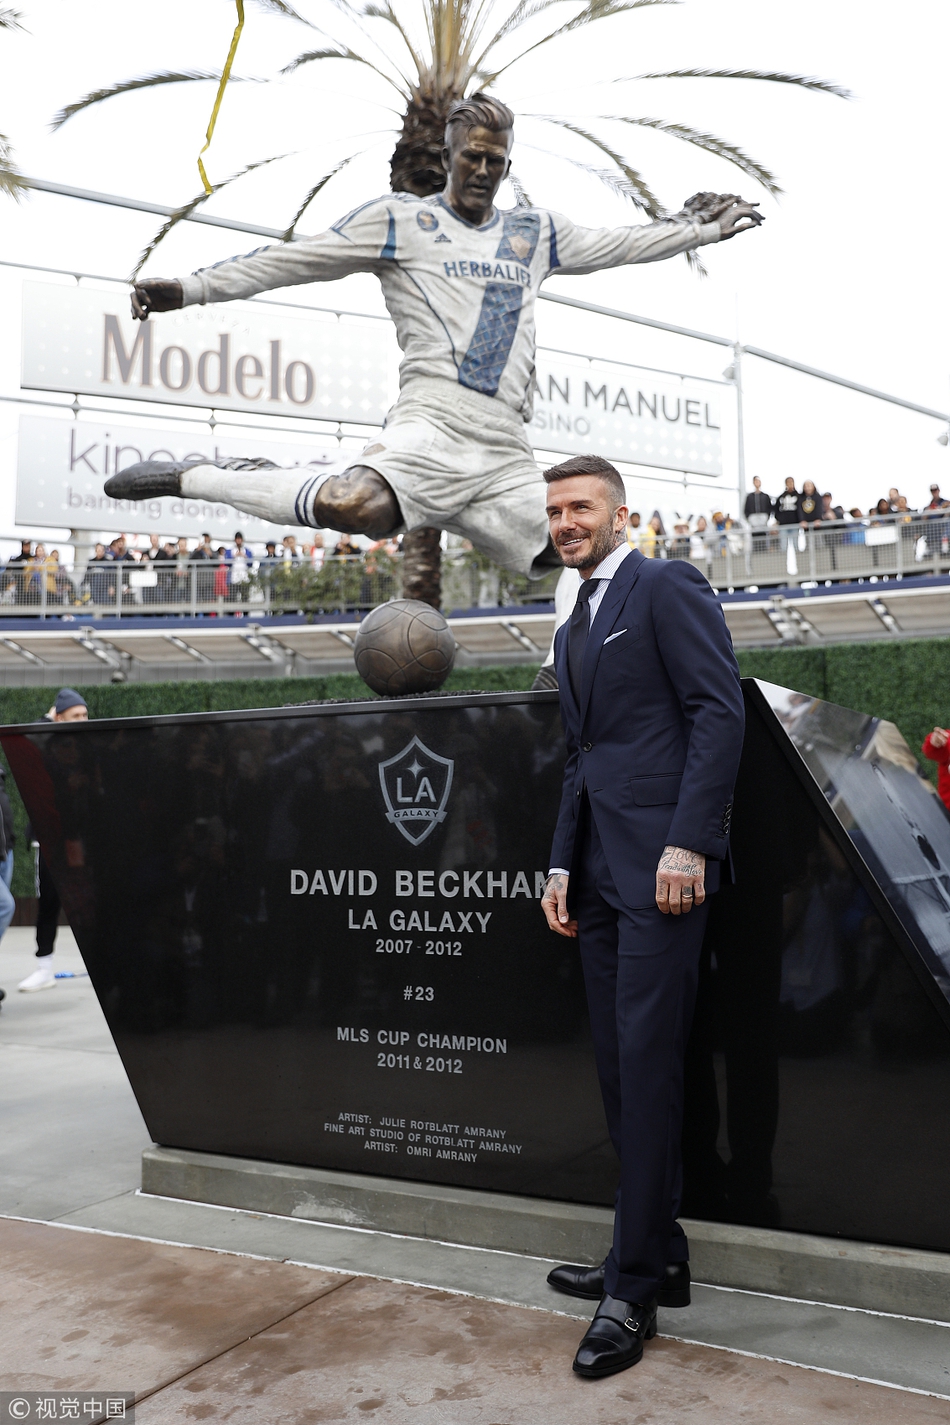 美国洛杉矶，大卫·贝克汉姆（David Beckham）参加自己的雕像揭幕仪式。小贝西装革履与人热聊魅力值爆表，全程喜气洋洋笑不拢嘴。据悉这尊雕像是美国足球大联盟洛杉矶银河队在体育场外树立，并于新赛季开赛前揭幕。洛杉矶银河俱乐部发言人哈曼此前透露，贝克汉姆的雕像将于3月2日银河队新赛季首战对阵芝加哥火焰队的比赛前进行揭幕，以致敬他对球队及整个联赛带来的贡献。